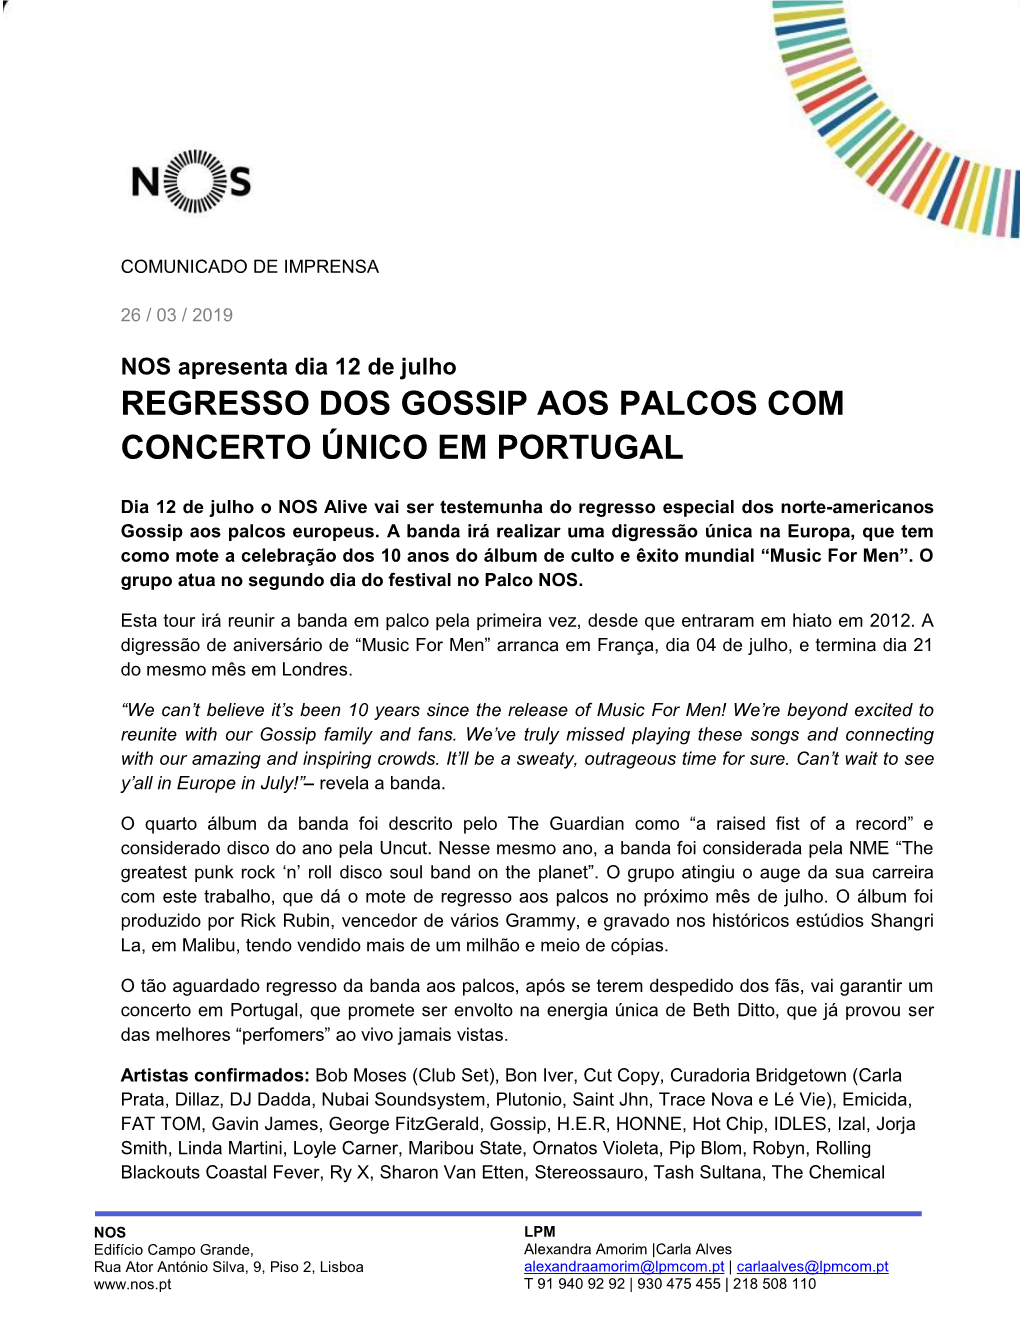 Regresso Dos Gossip Aos Palcos Com Concerto Único Em Portugal